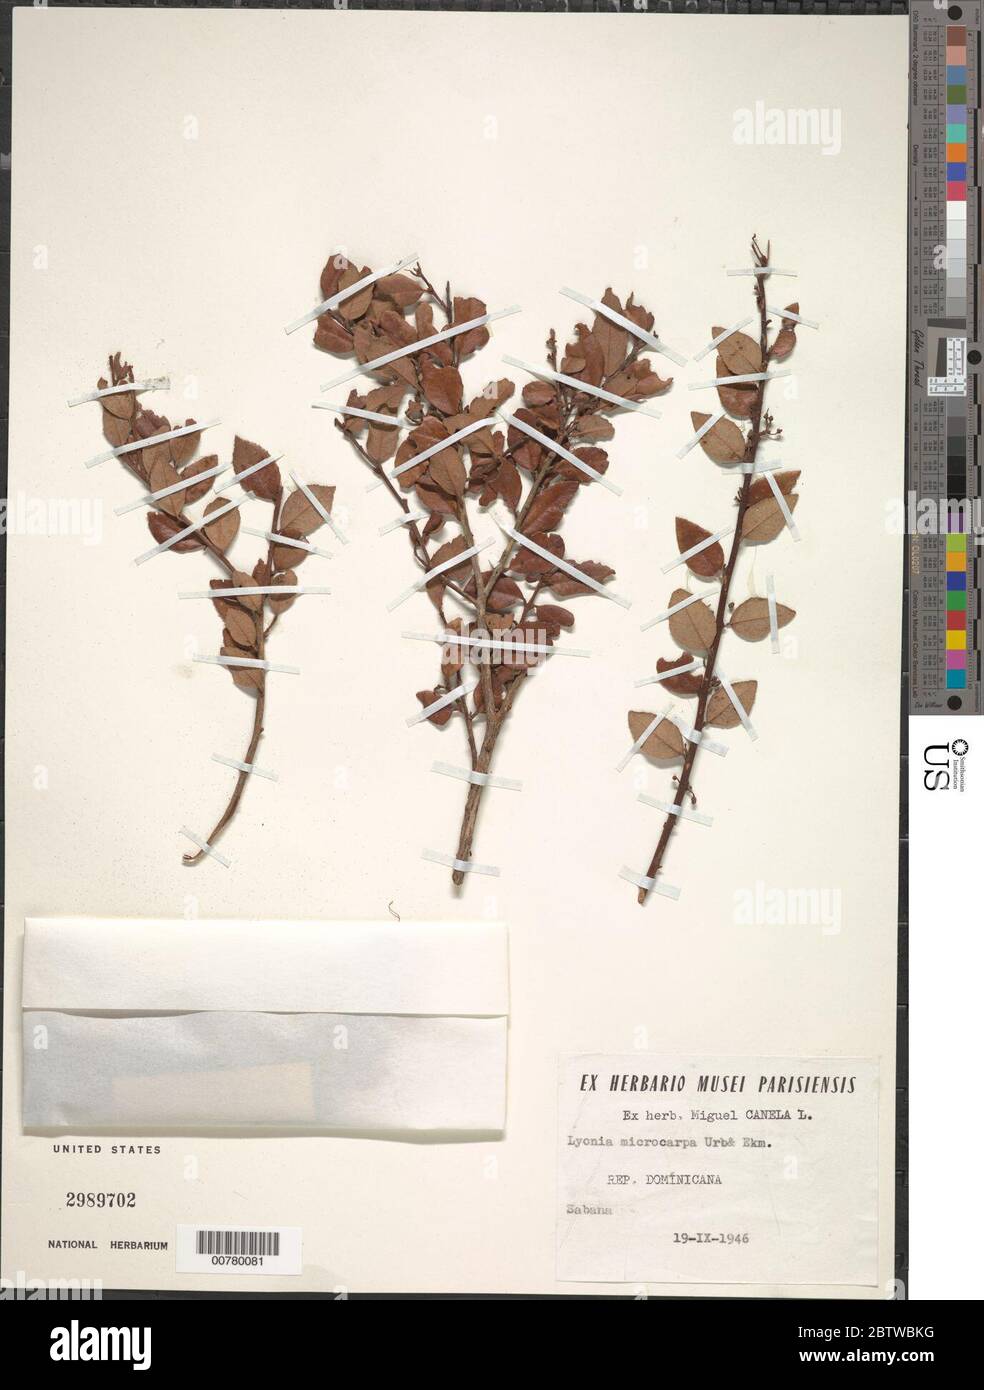 Lyonia microcarpa Urb Ekman. Stock Photo